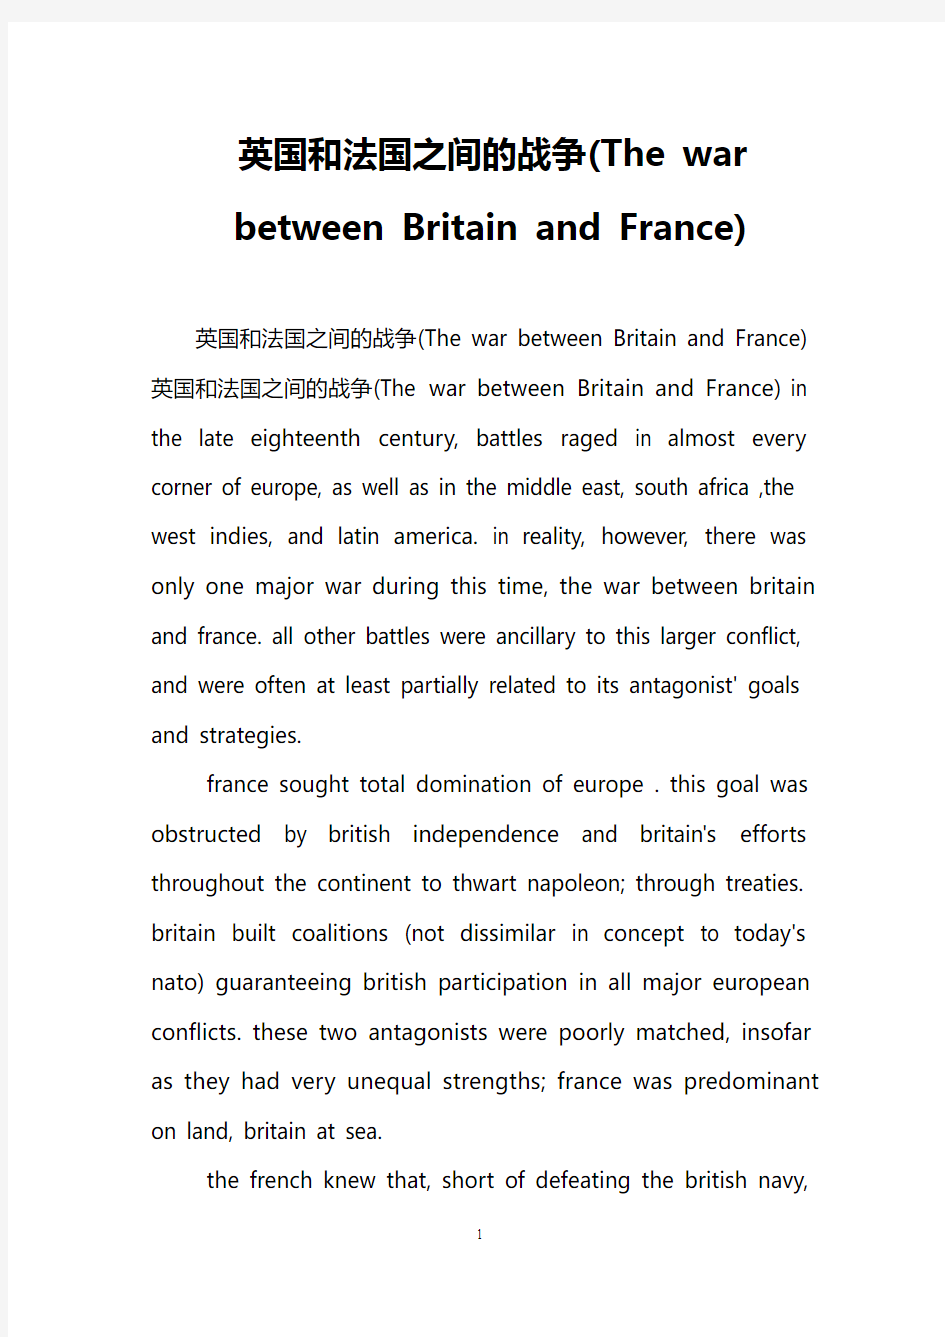 英国和法国之间的战争(The war between Britain and France)